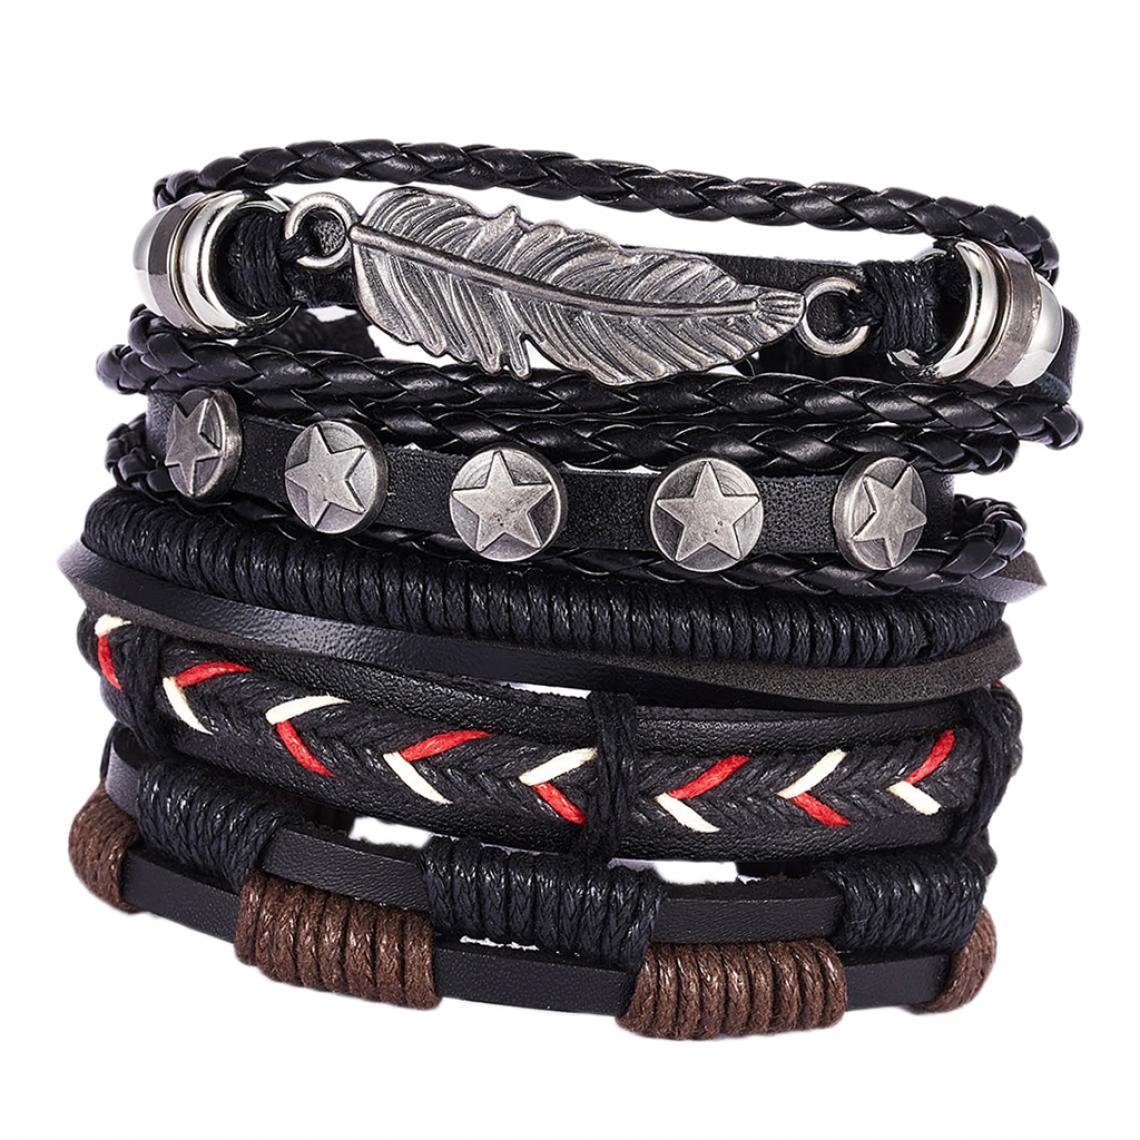 marque generique - Bracelet réglable en cuir avec manchette tissée style rétro 5pcs noir - Bracelet connecté